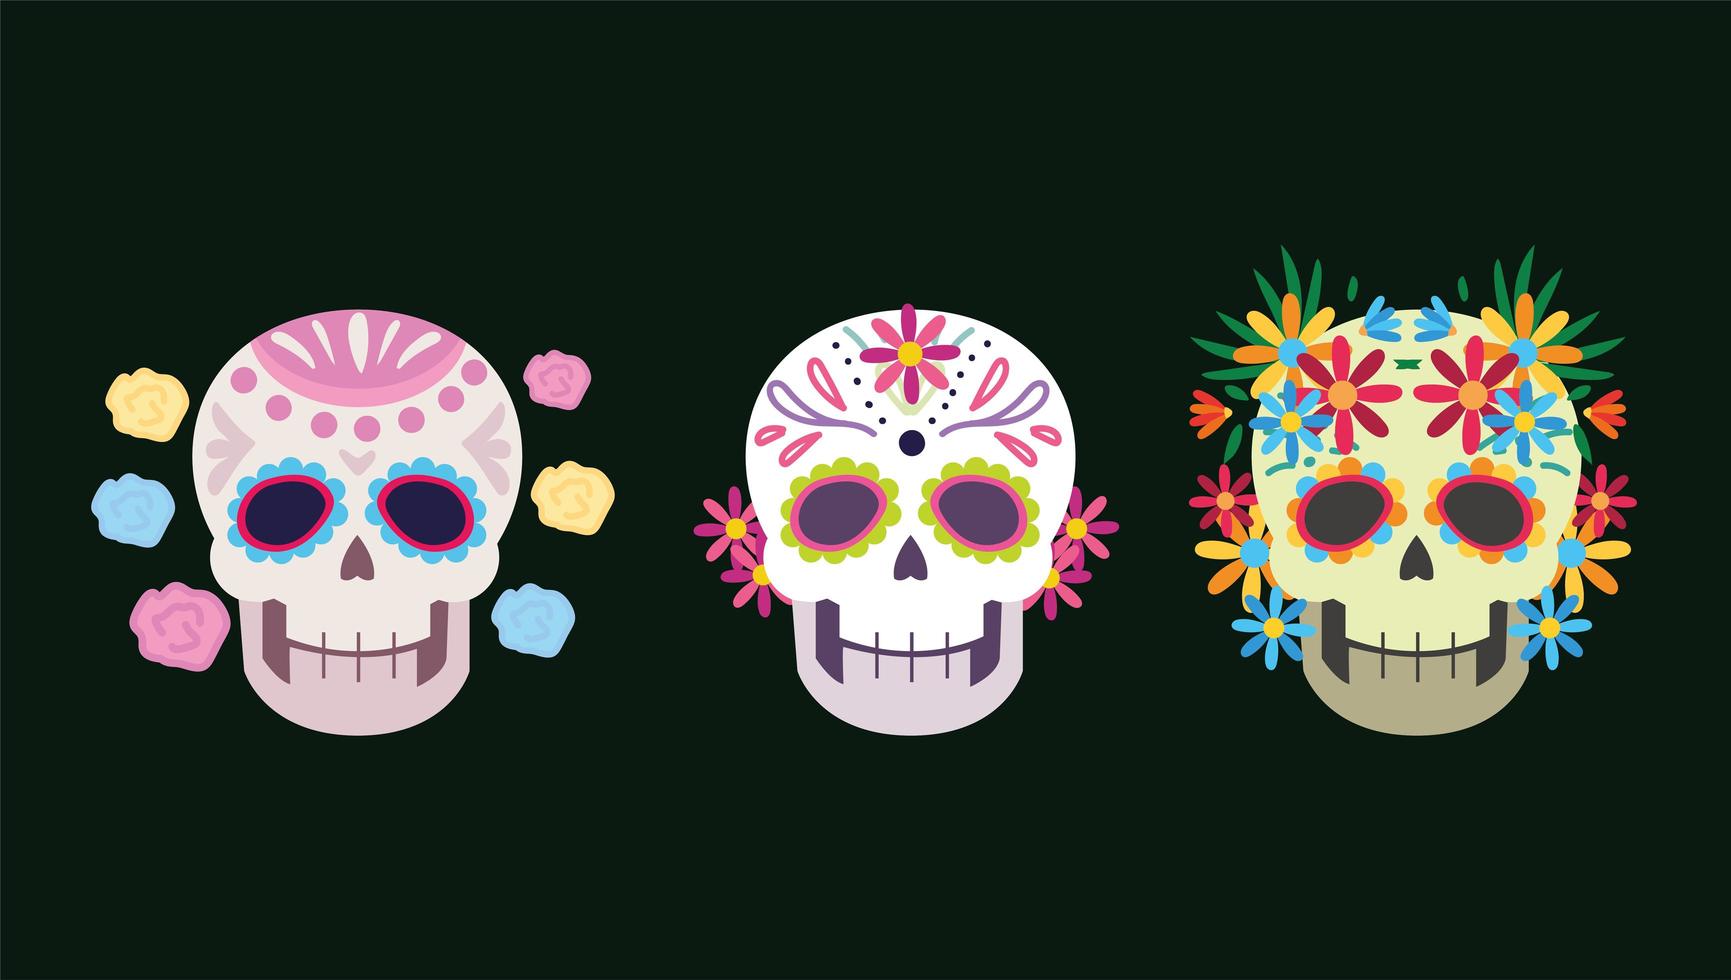 giorno dei morti, decorazione floreale di fiori di teschi, celebrazione messicana vettore